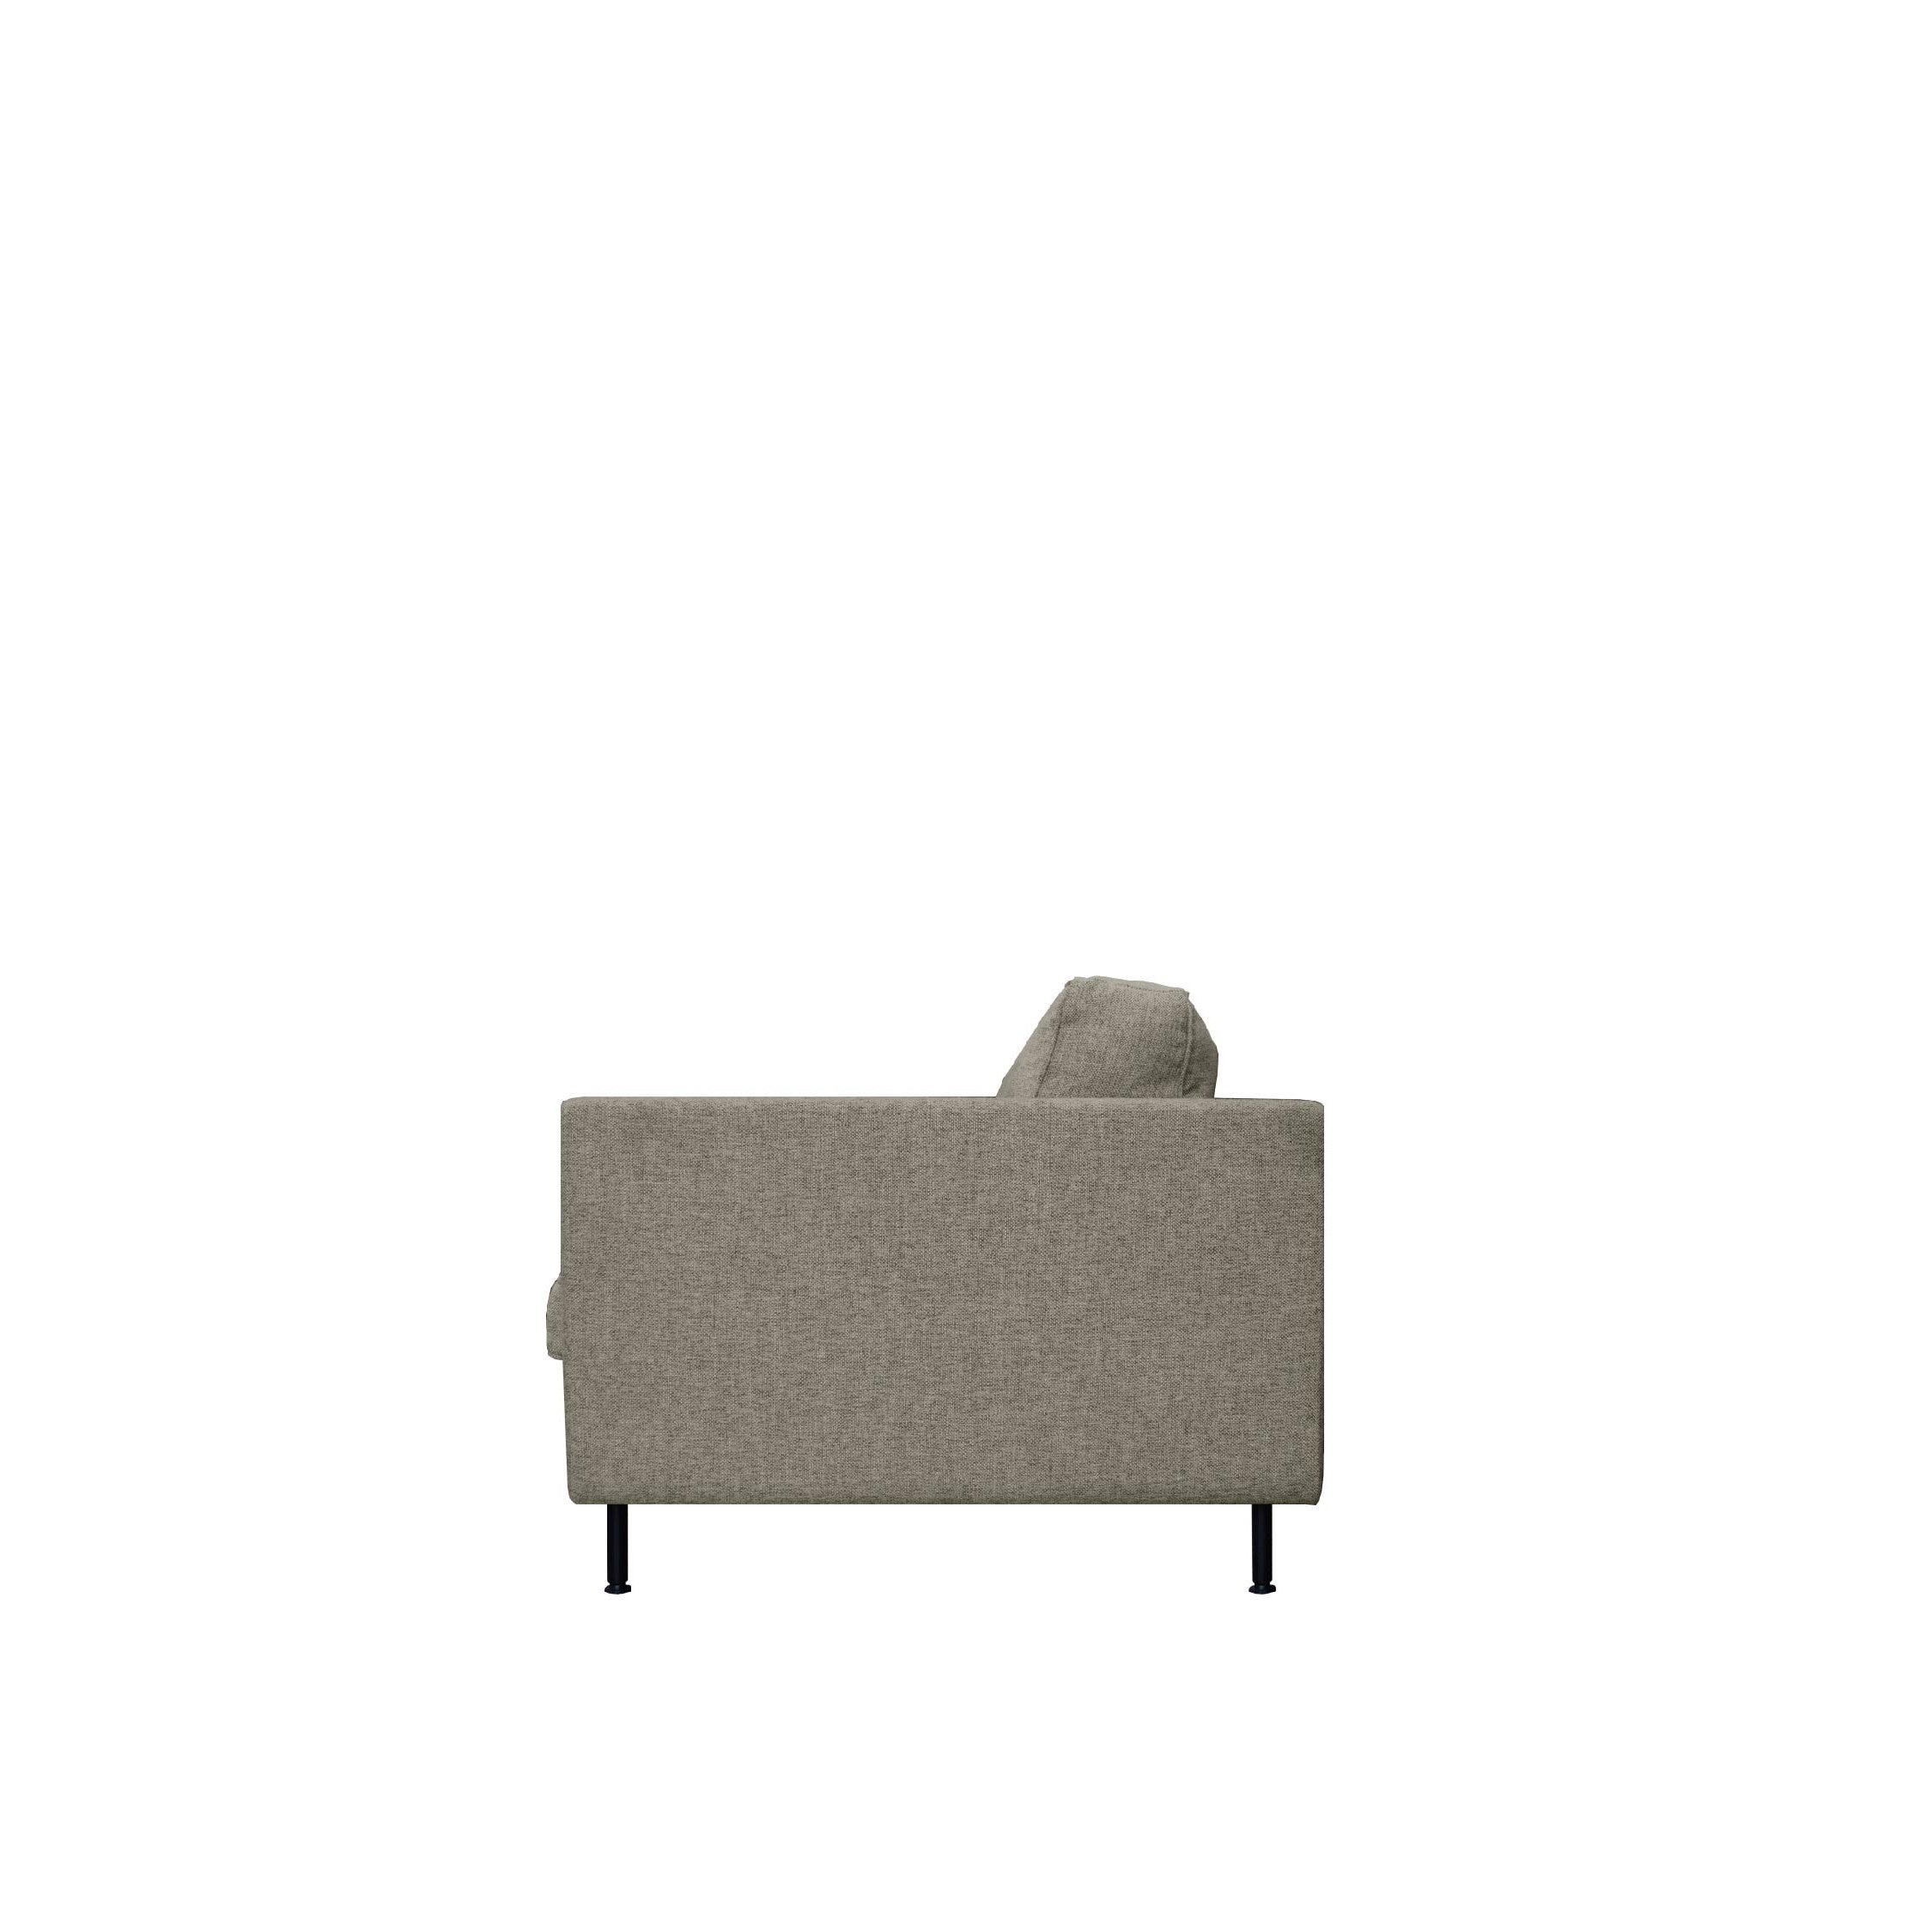 GARIS Sofa 3 Seater